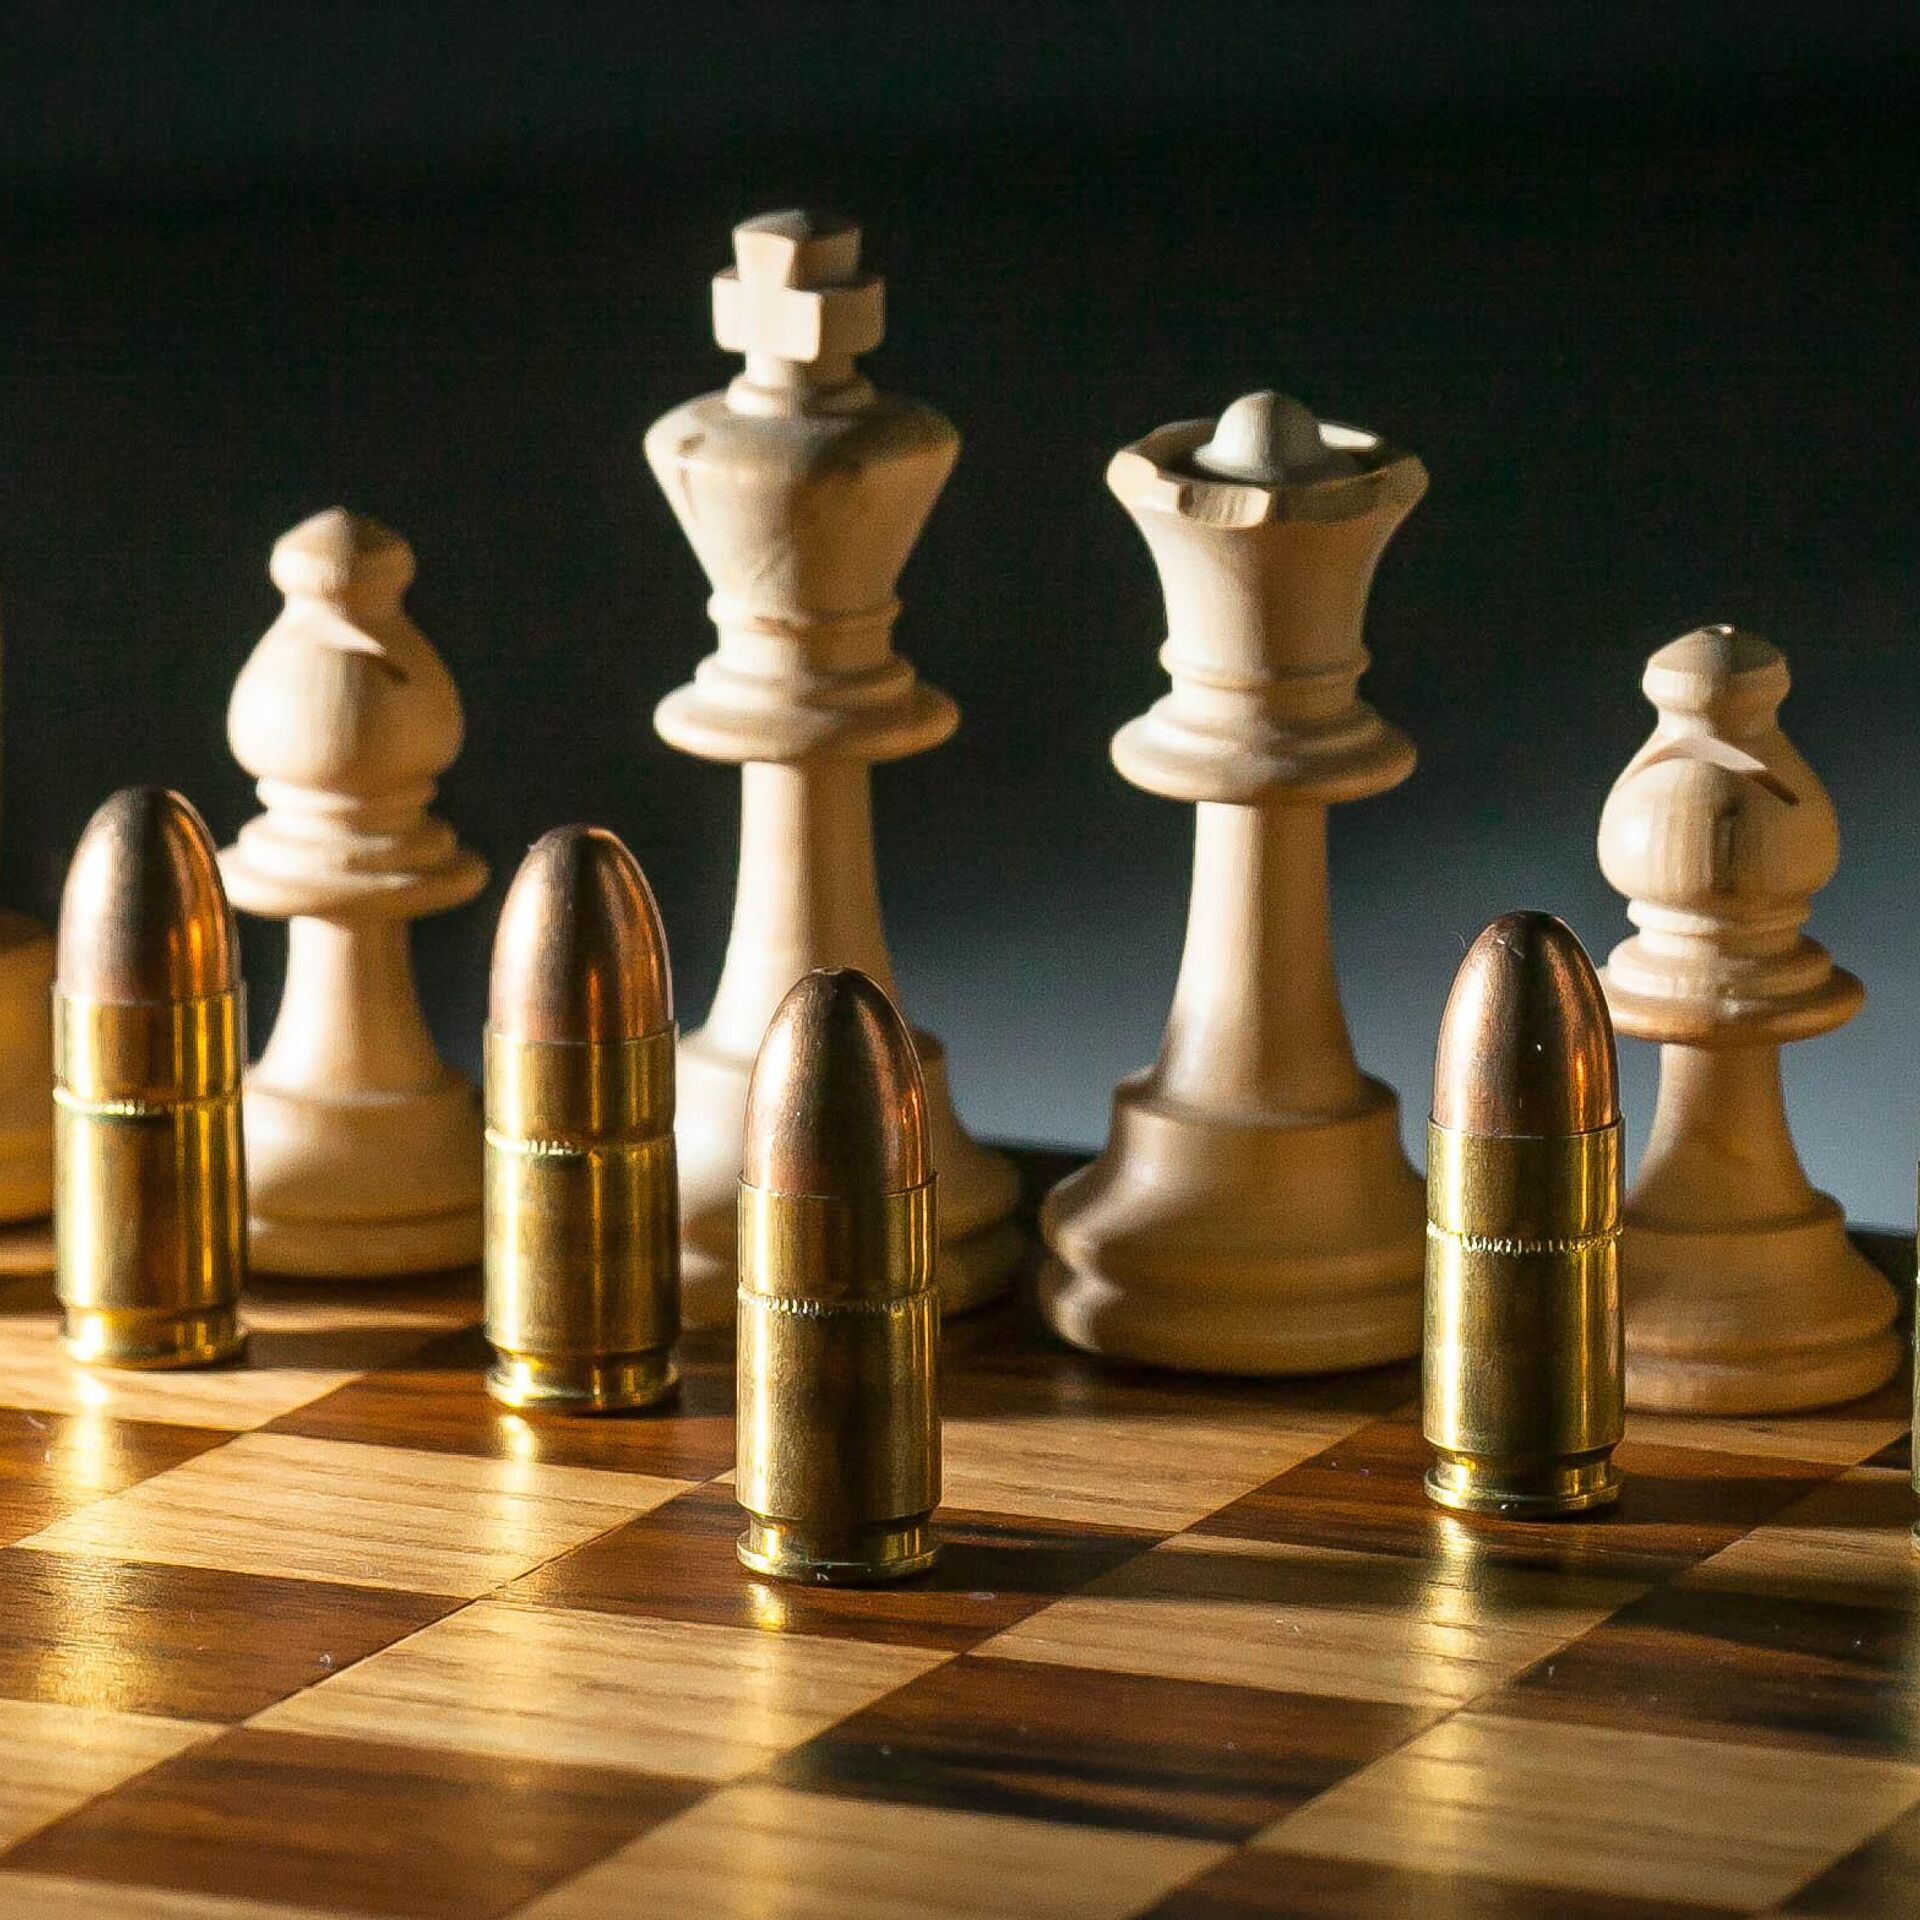 FIDE presenta el primer reglamento internacional de ajedrez online - 24  Horas